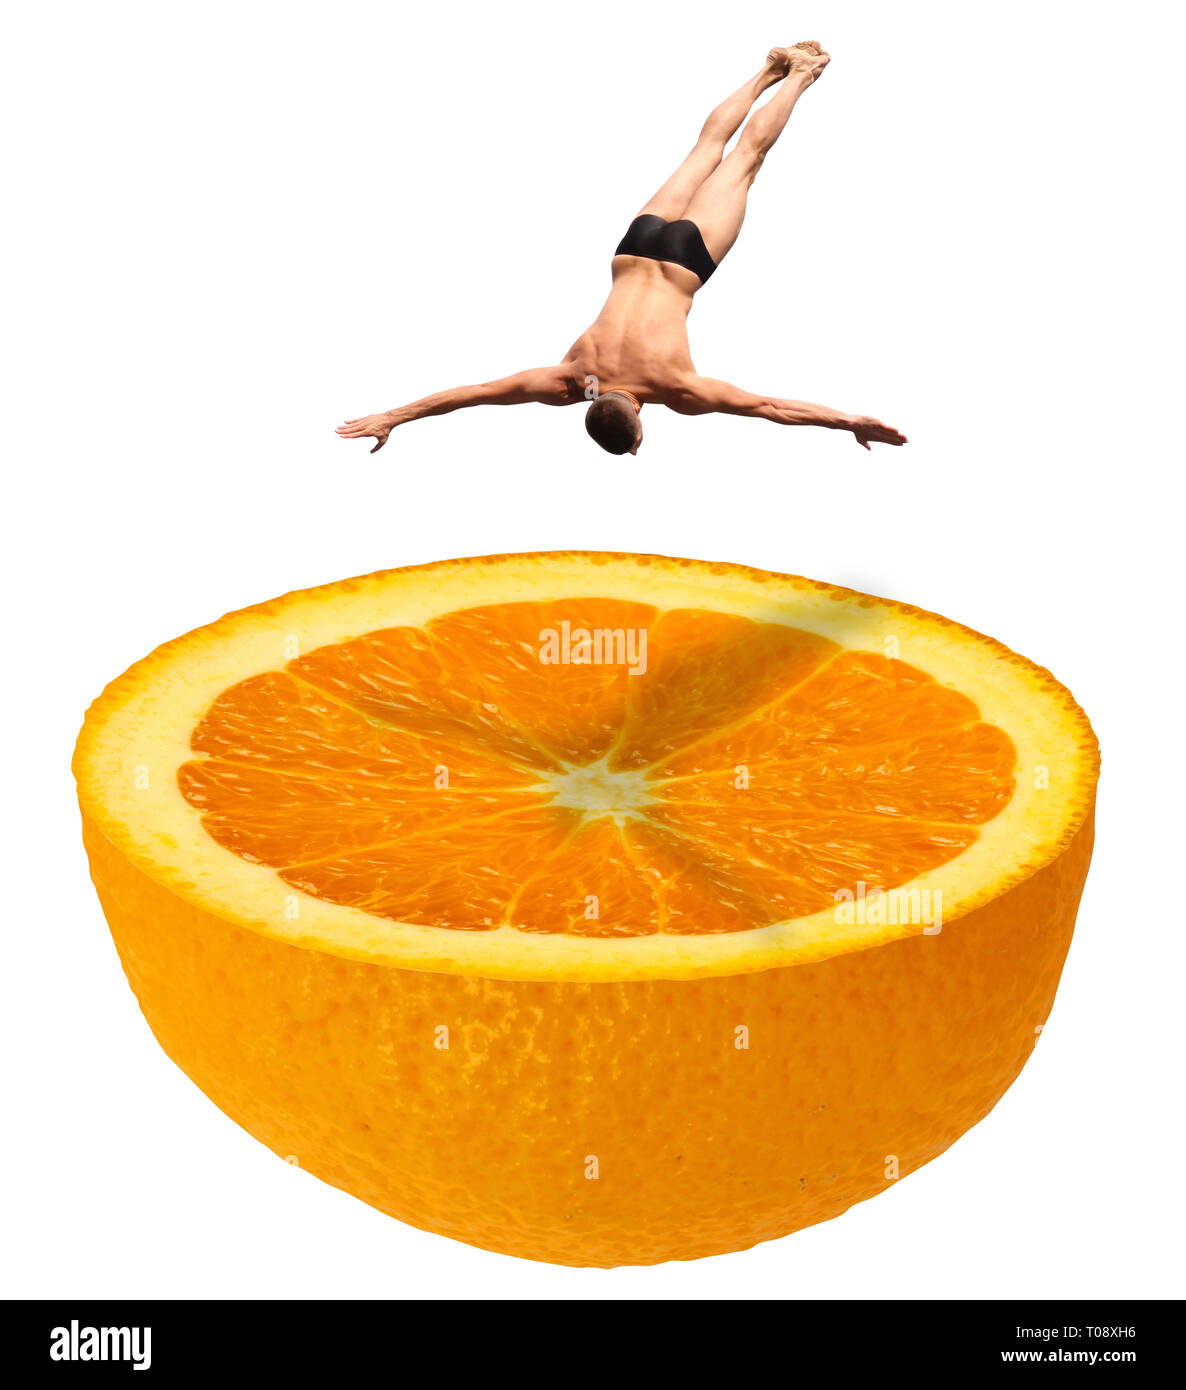 High diving nuotatore in costume da bagno slip saltare giù in un mezzo fresco arancia succosa frutta come una piscina - foto manipolate Concetto di immagine - isola Foto Stock